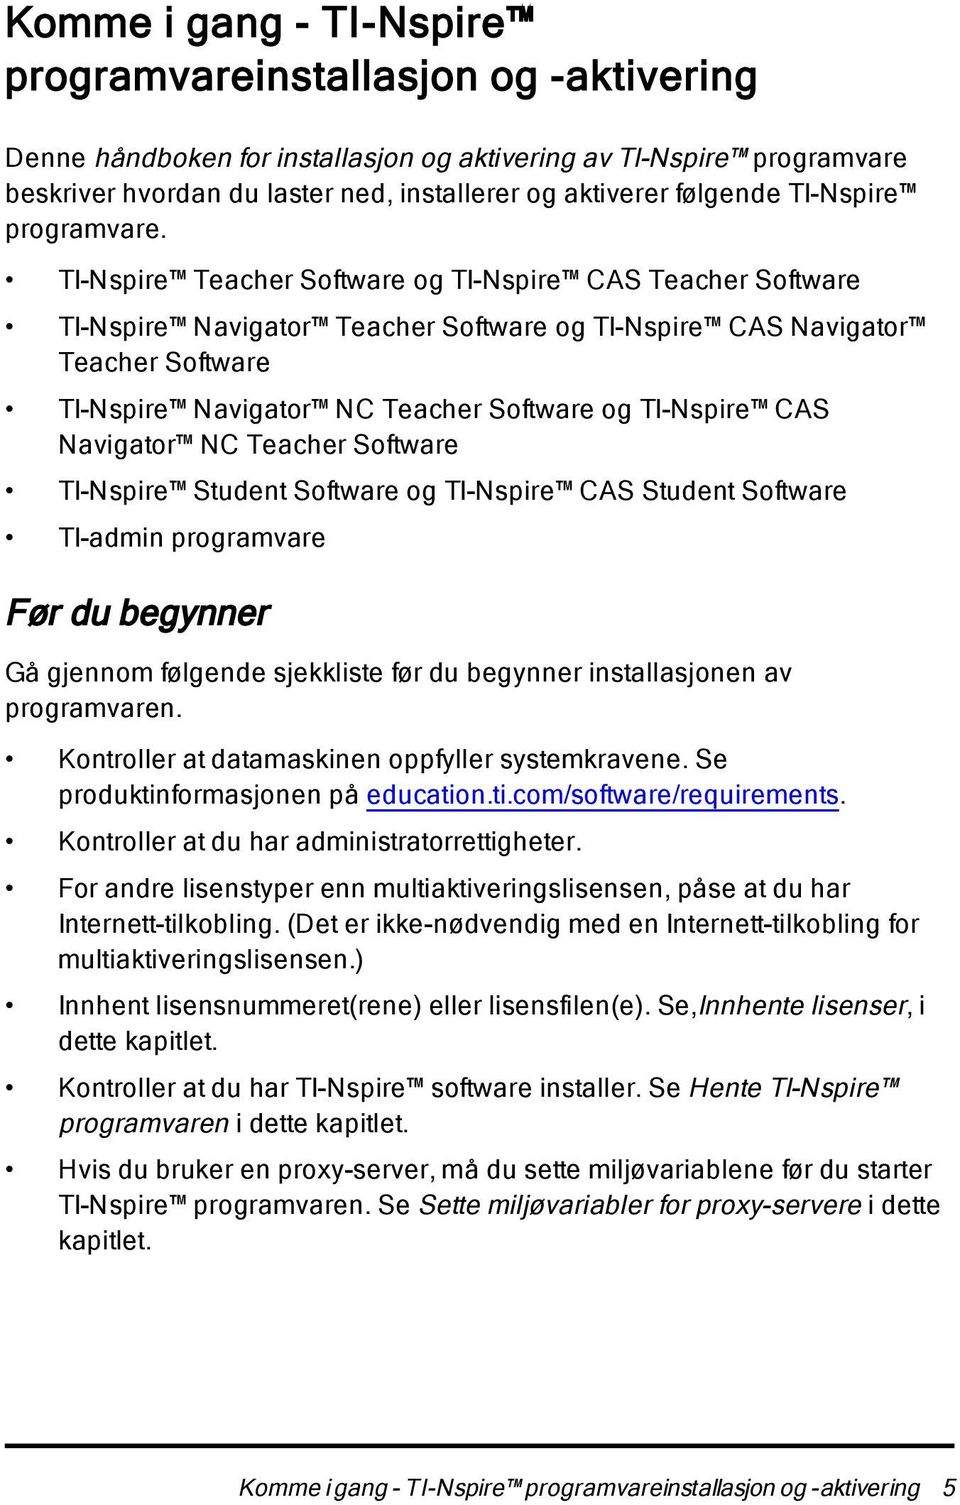 TI-Nspire Teacher Software og TI-Nspire CAS Teacher Software TI-Nspire Navigator Teacher Software og TI-Nspire CAS Navigator Teacher Software TI-Nspire Navigator NC Teacher Software og TI-Nspire CAS